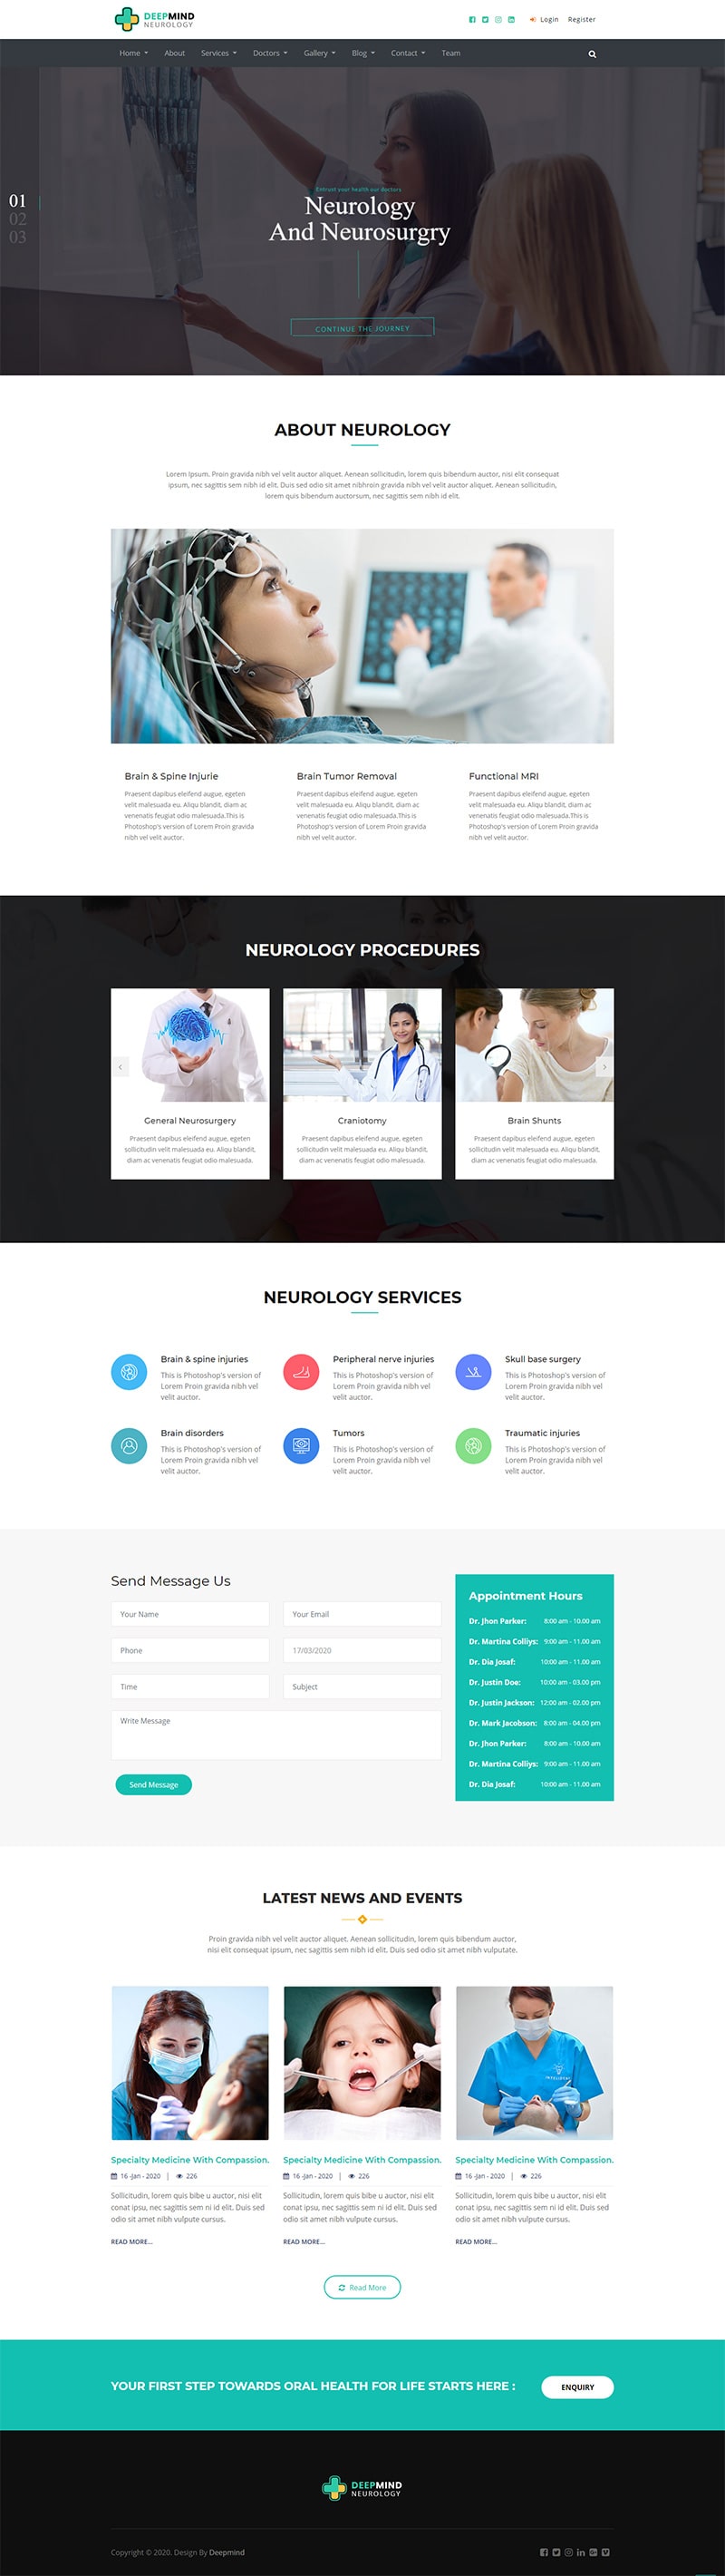 neurology home Page